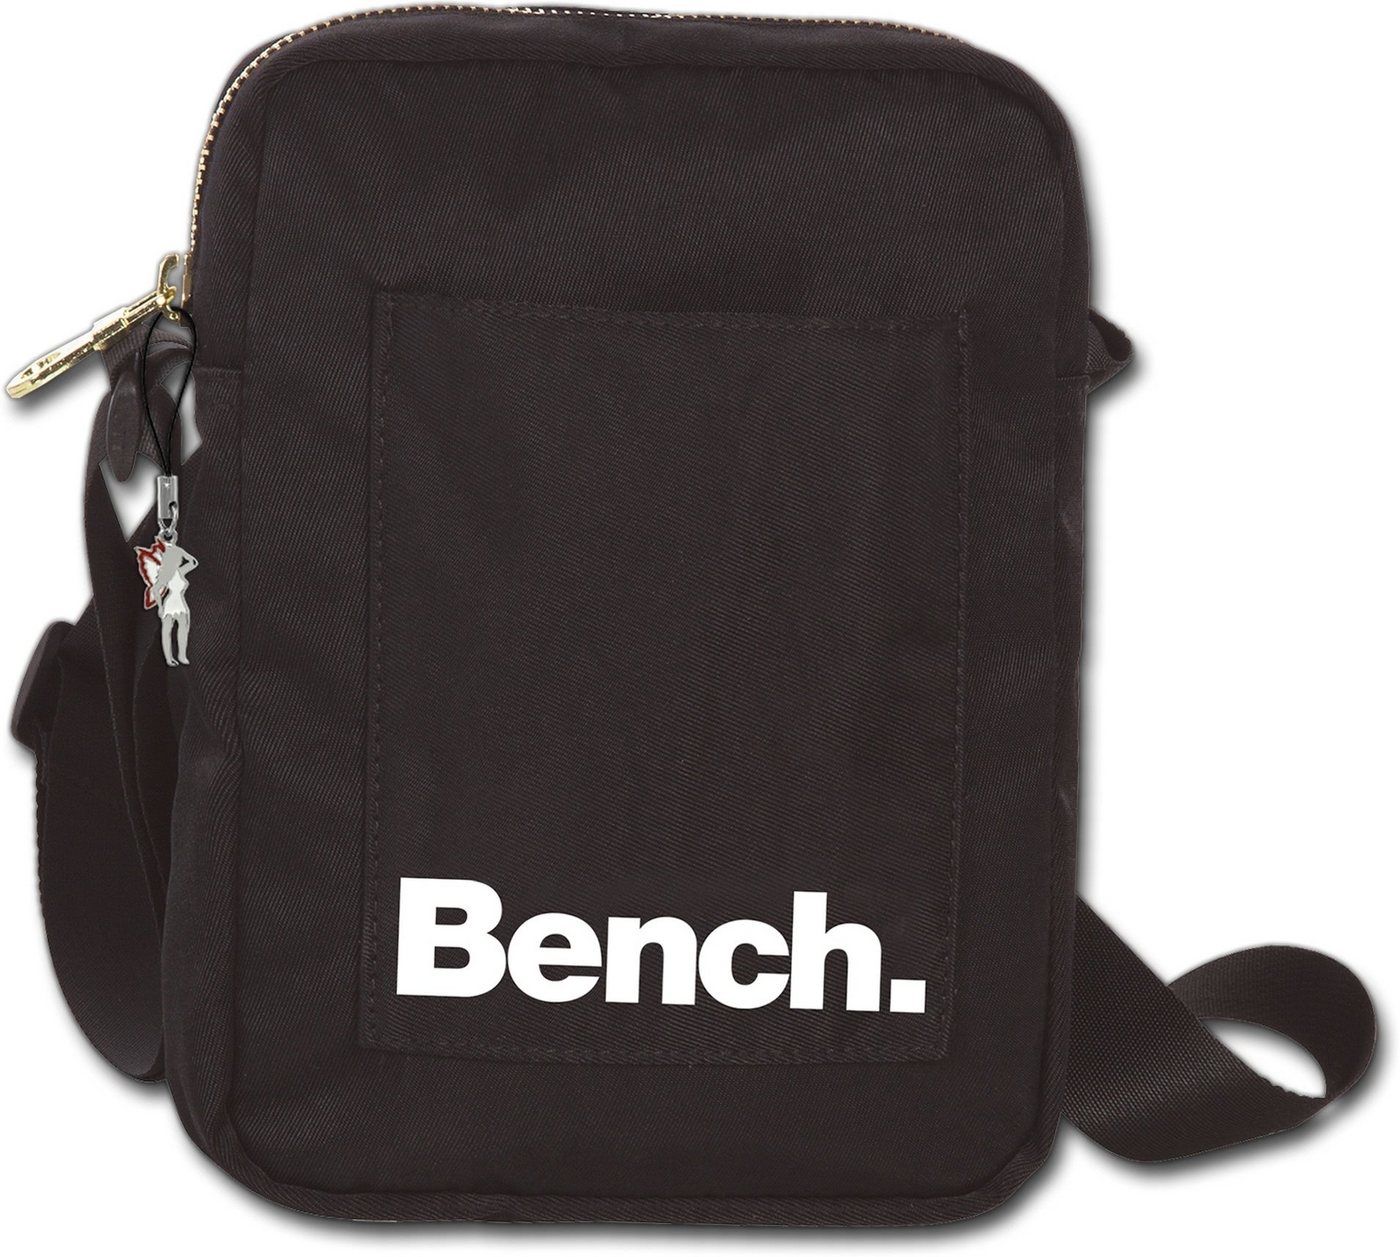 Bench. Umhängetasche Bench sportliche MiniBag Umhängetasche (Umhängetasche, Umhängetasche), Umhängetasche Nylon schwarz, ca. 14cm, uni von Bench.